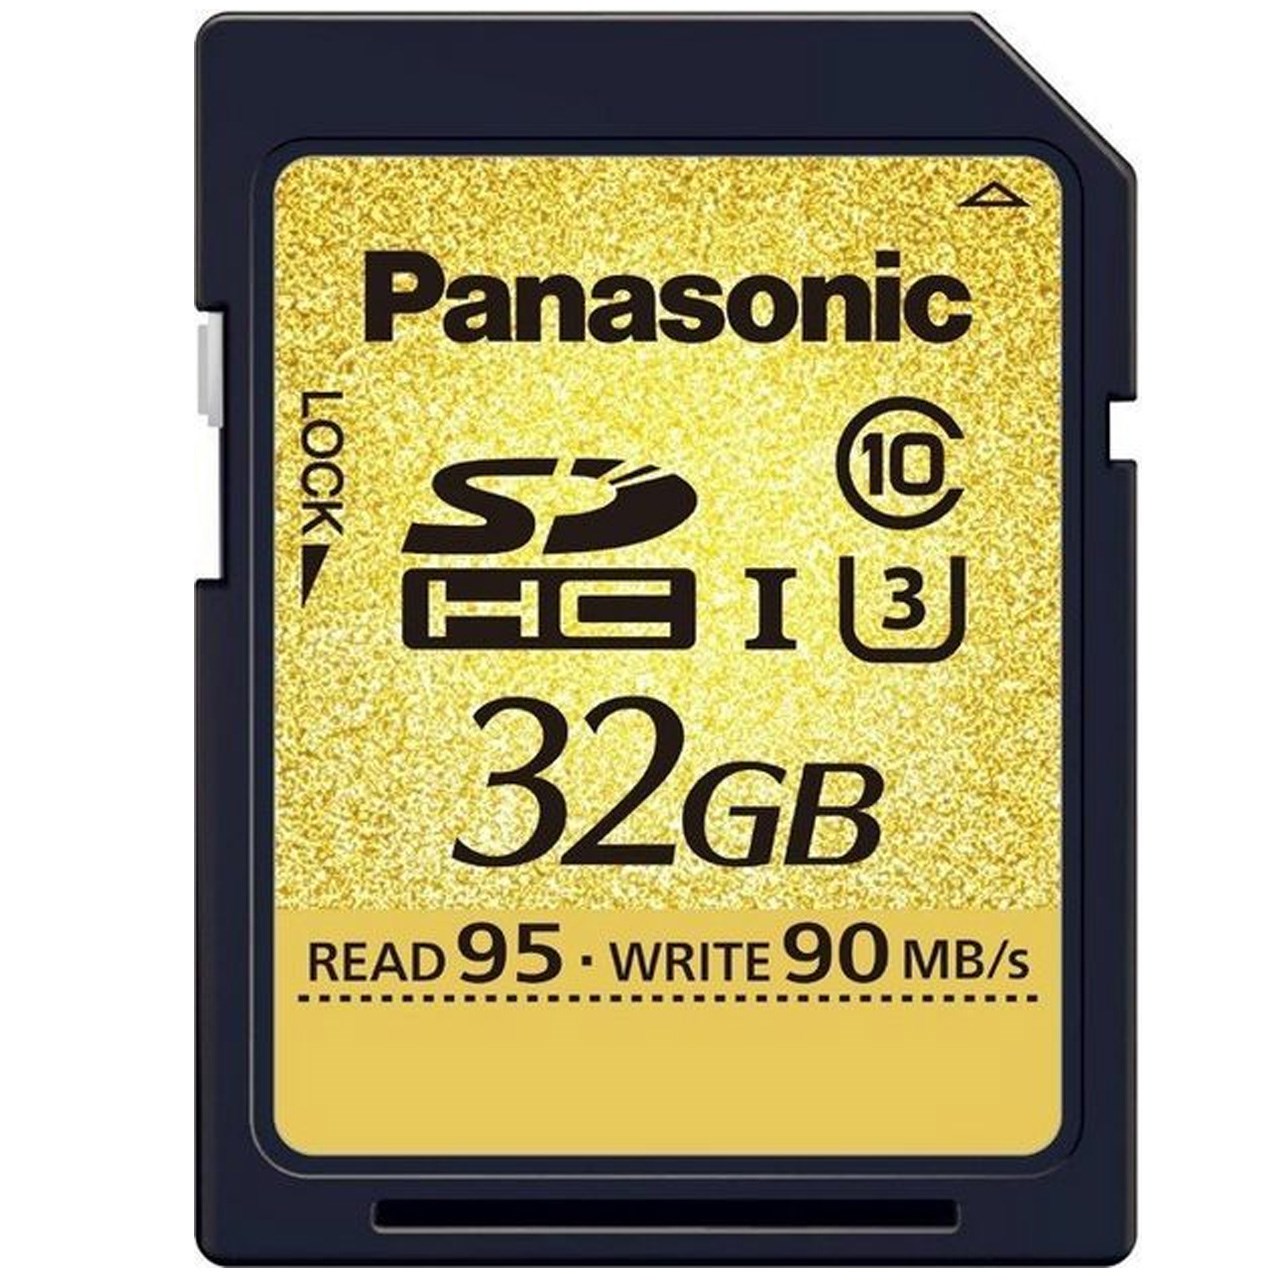 کارت حافظه SDHC پاناسونیک مدل RP-SDUD32GAK کلاس 10 استاندارد UHS-I U3 سرعت 95MBps ظرفیت 32 گیگابایت